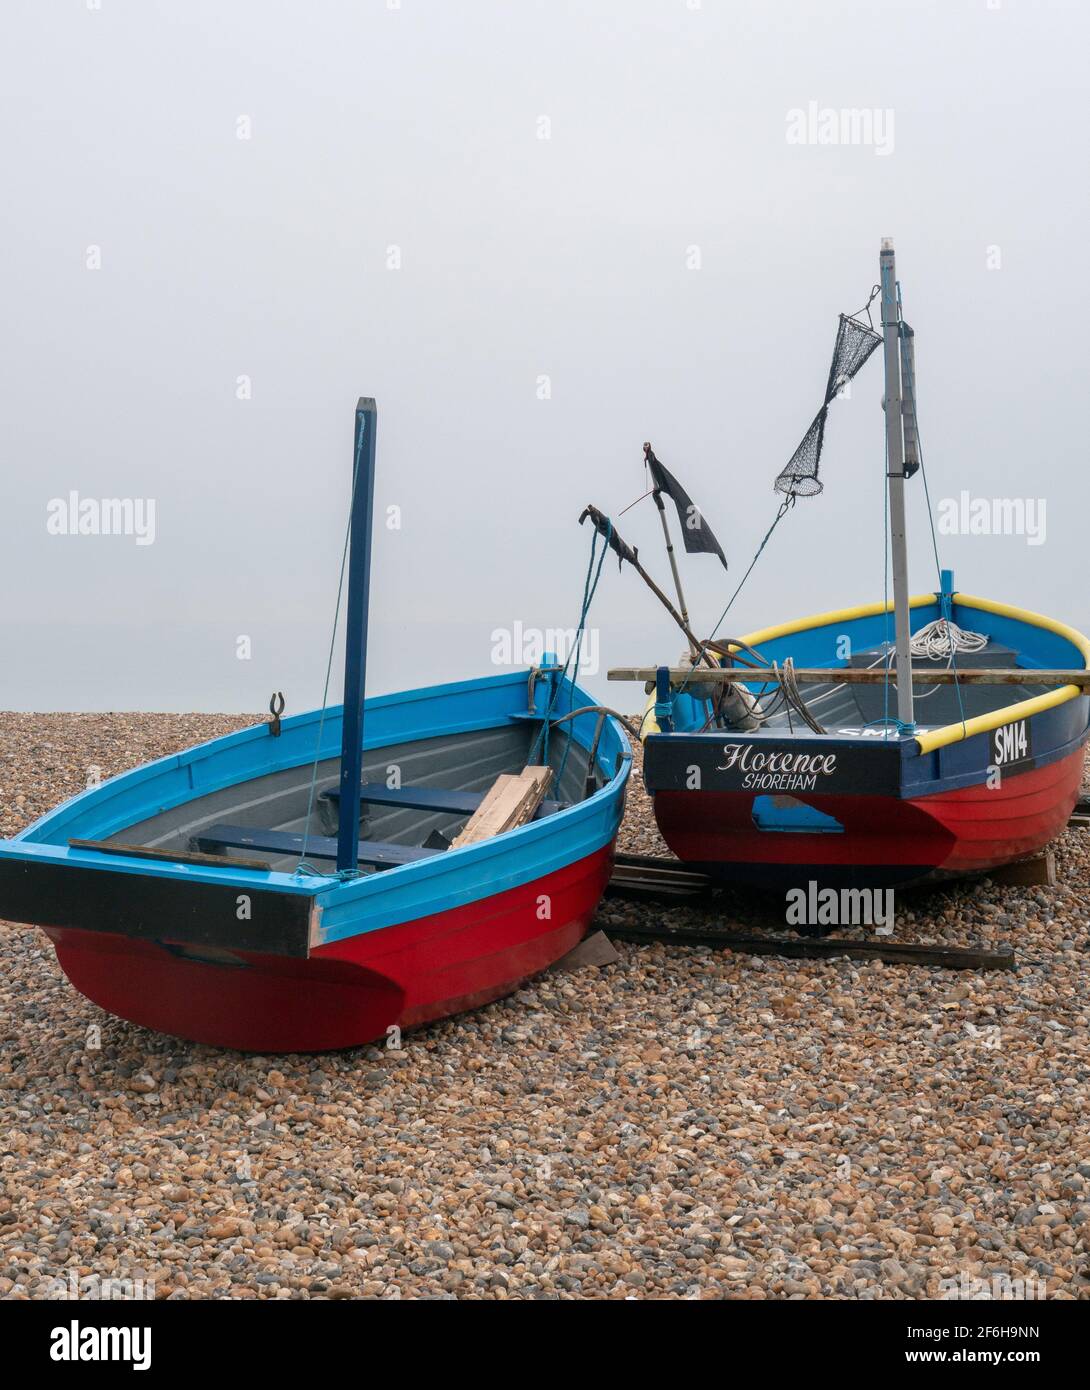 Deux petits bateaux de pêche vus sur une plage de gravier sur la côte sud de l'Angleterre, au Royaume-Uni. Banque D'Images